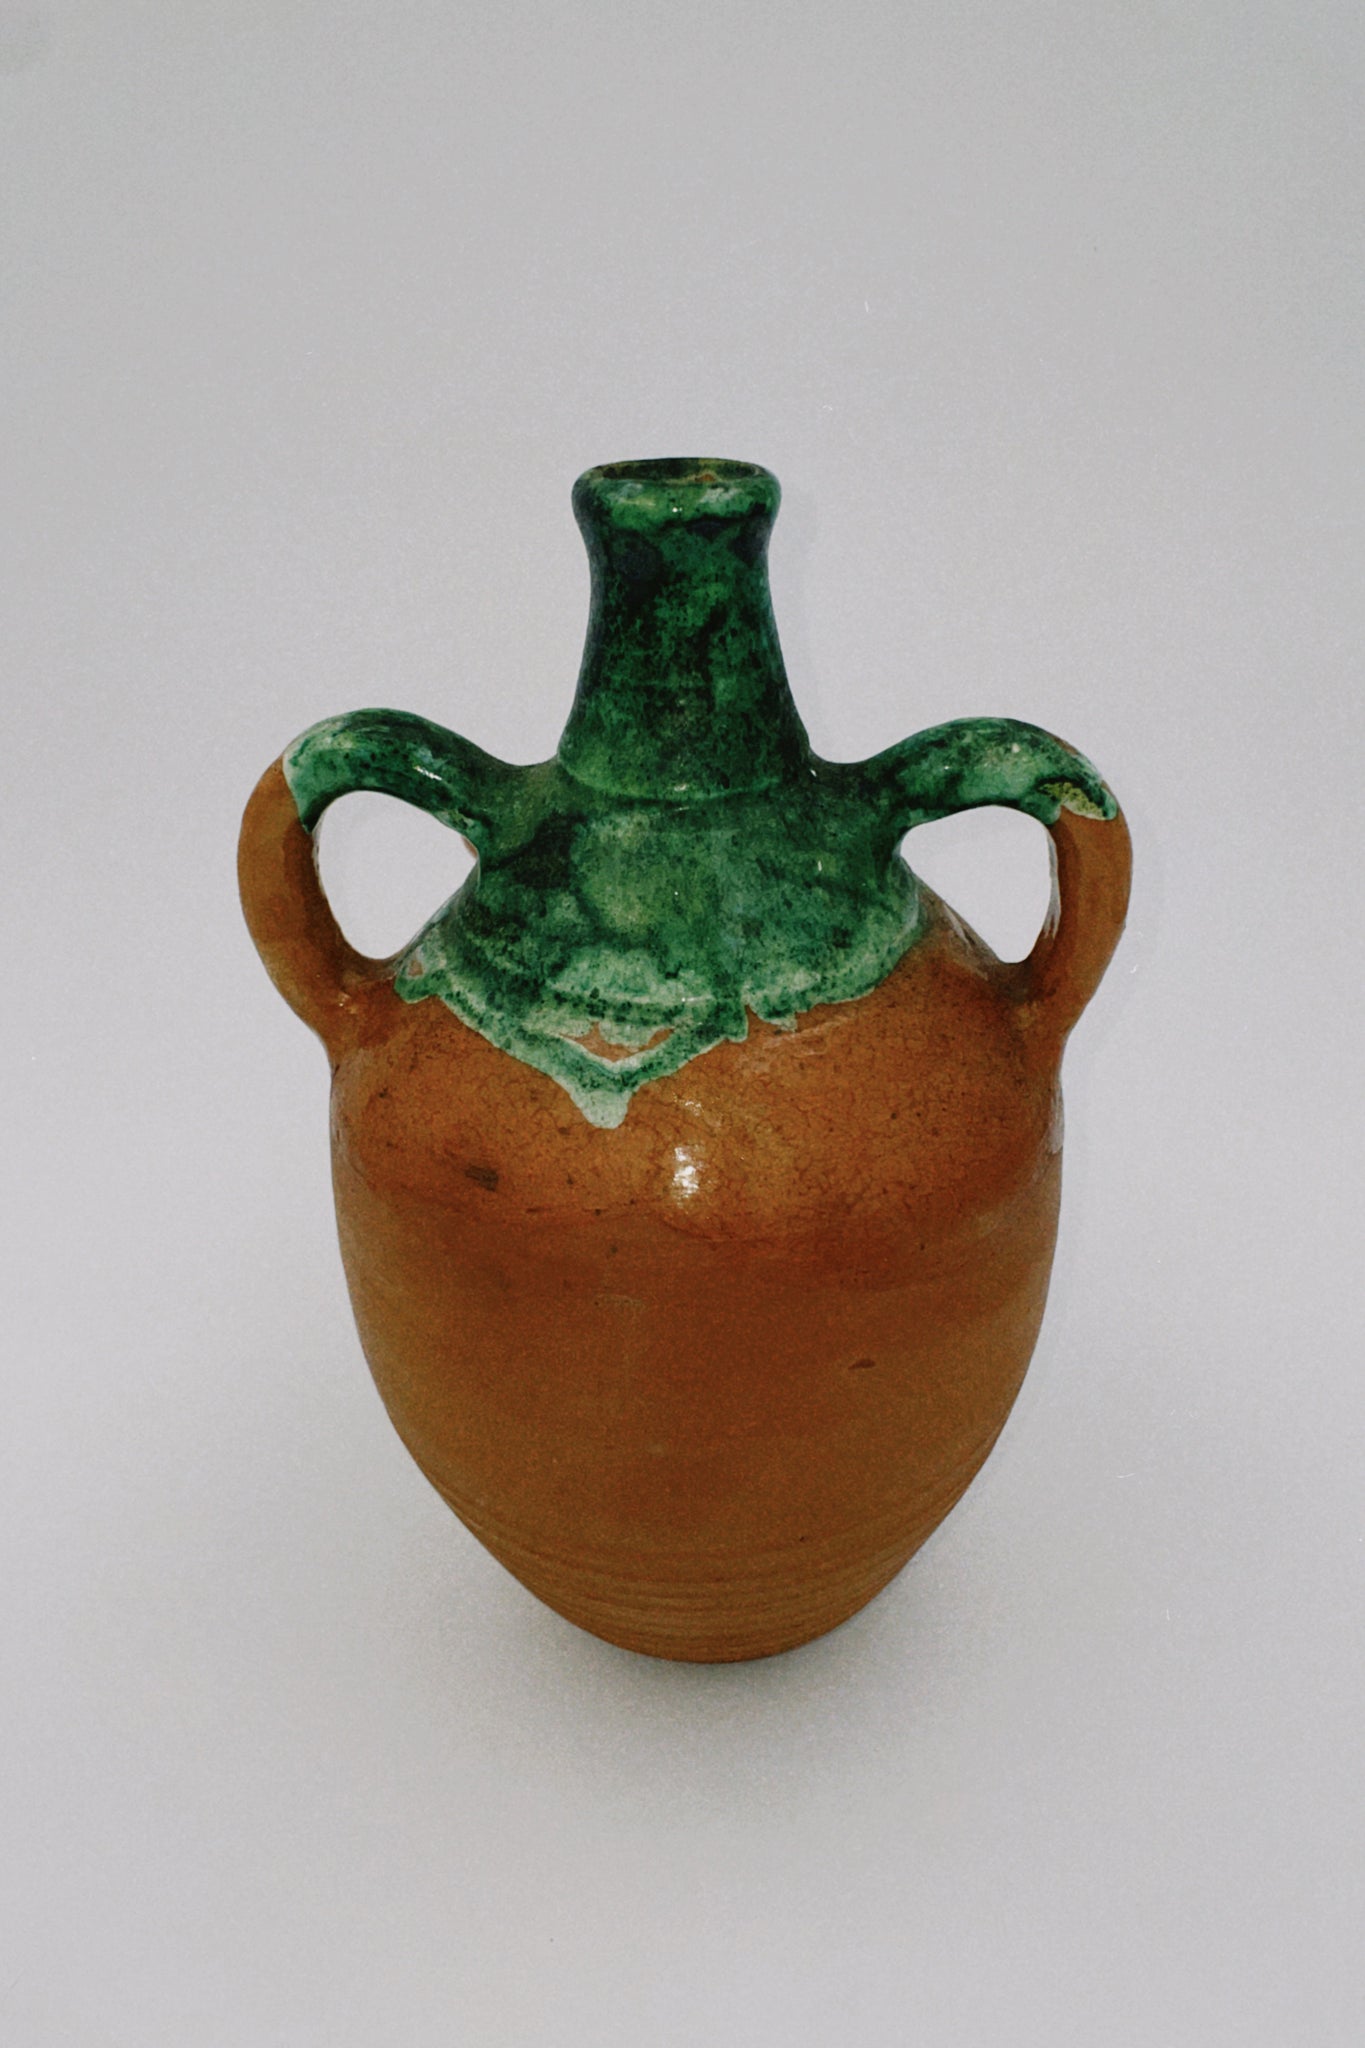 Ceramic Clay and Green Jug